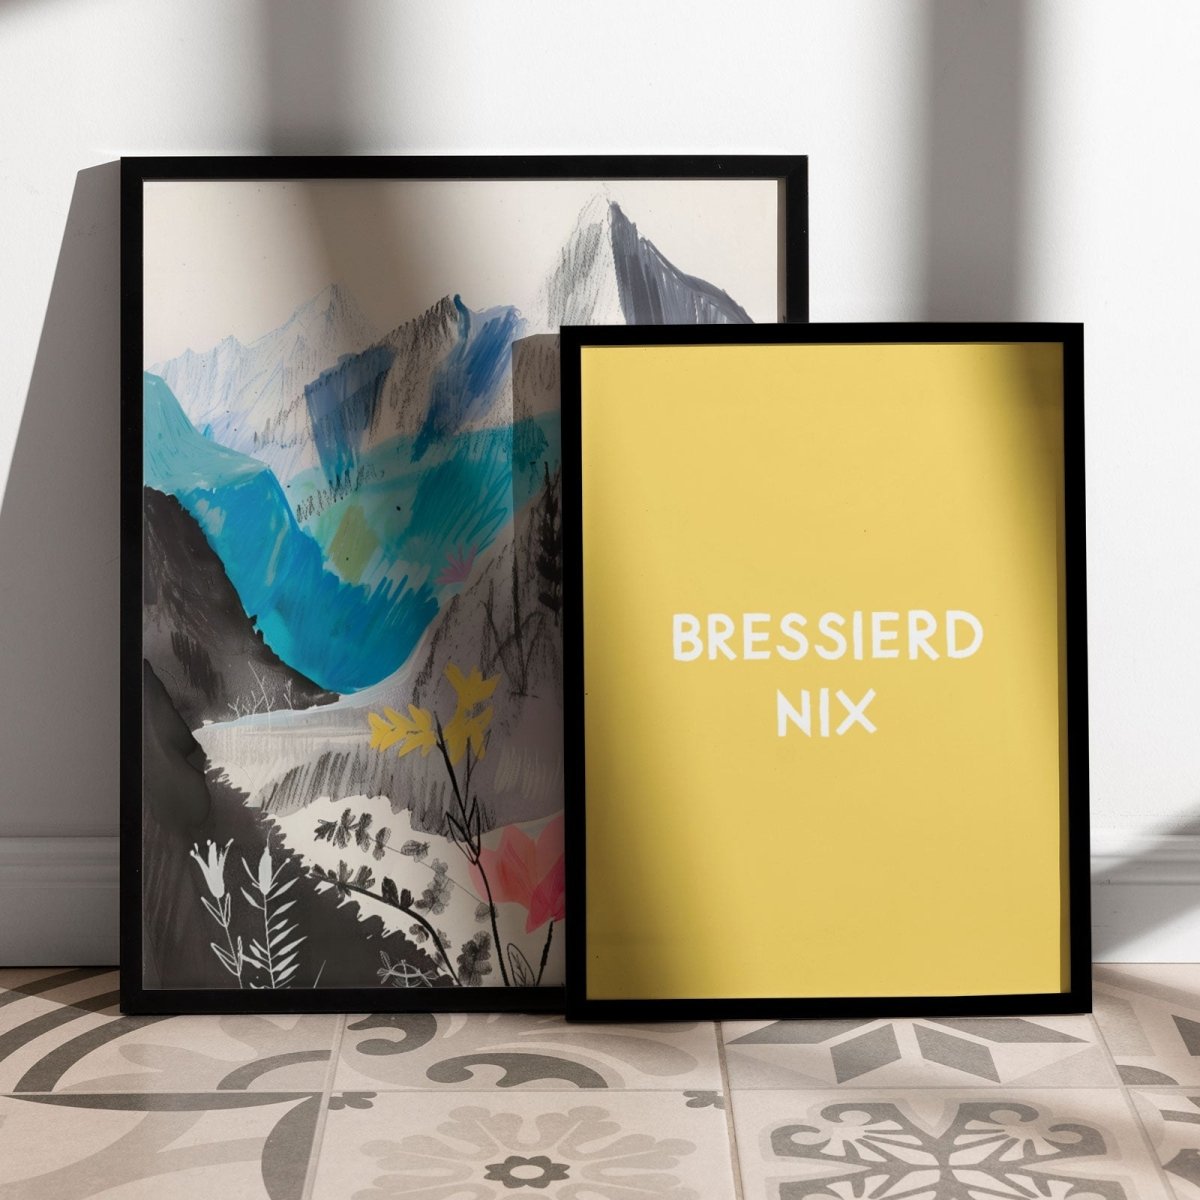 Lustiges bayerisches Poster "Bressierd nix" - vonSUSI